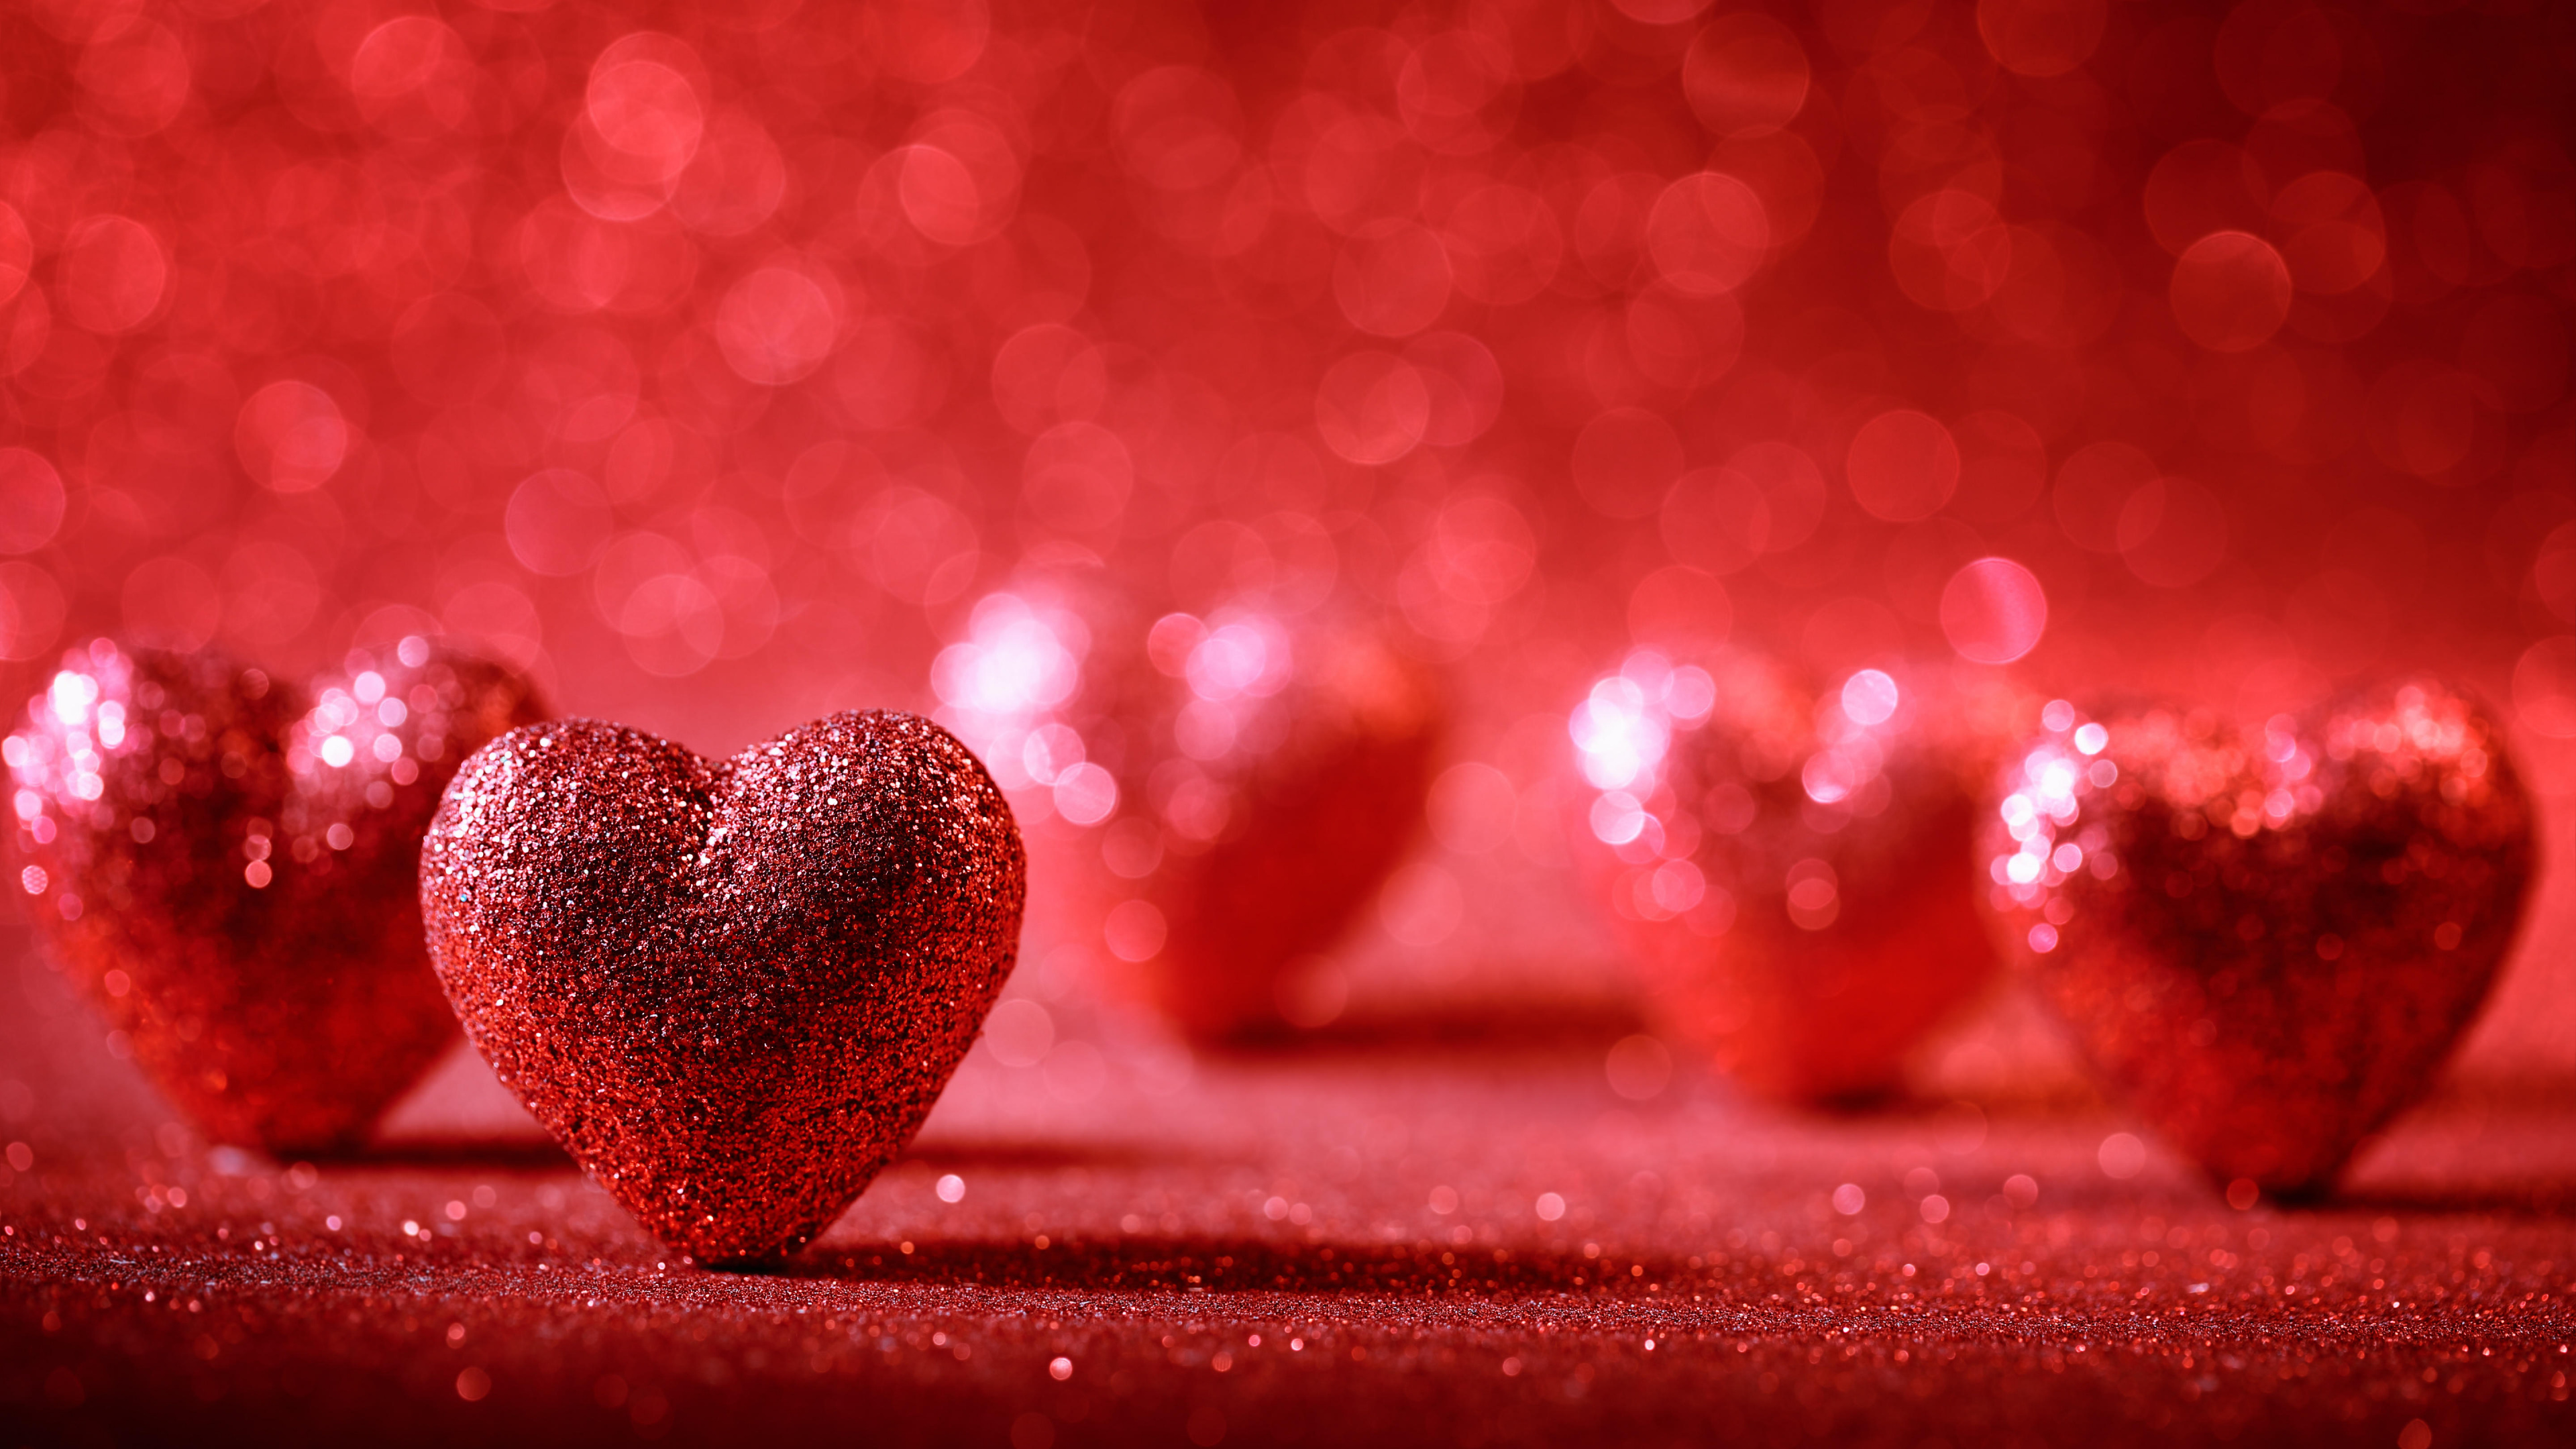 心脏, 红色的, 爱情, 浪漫, 天空 壁纸 3840x2160 允许